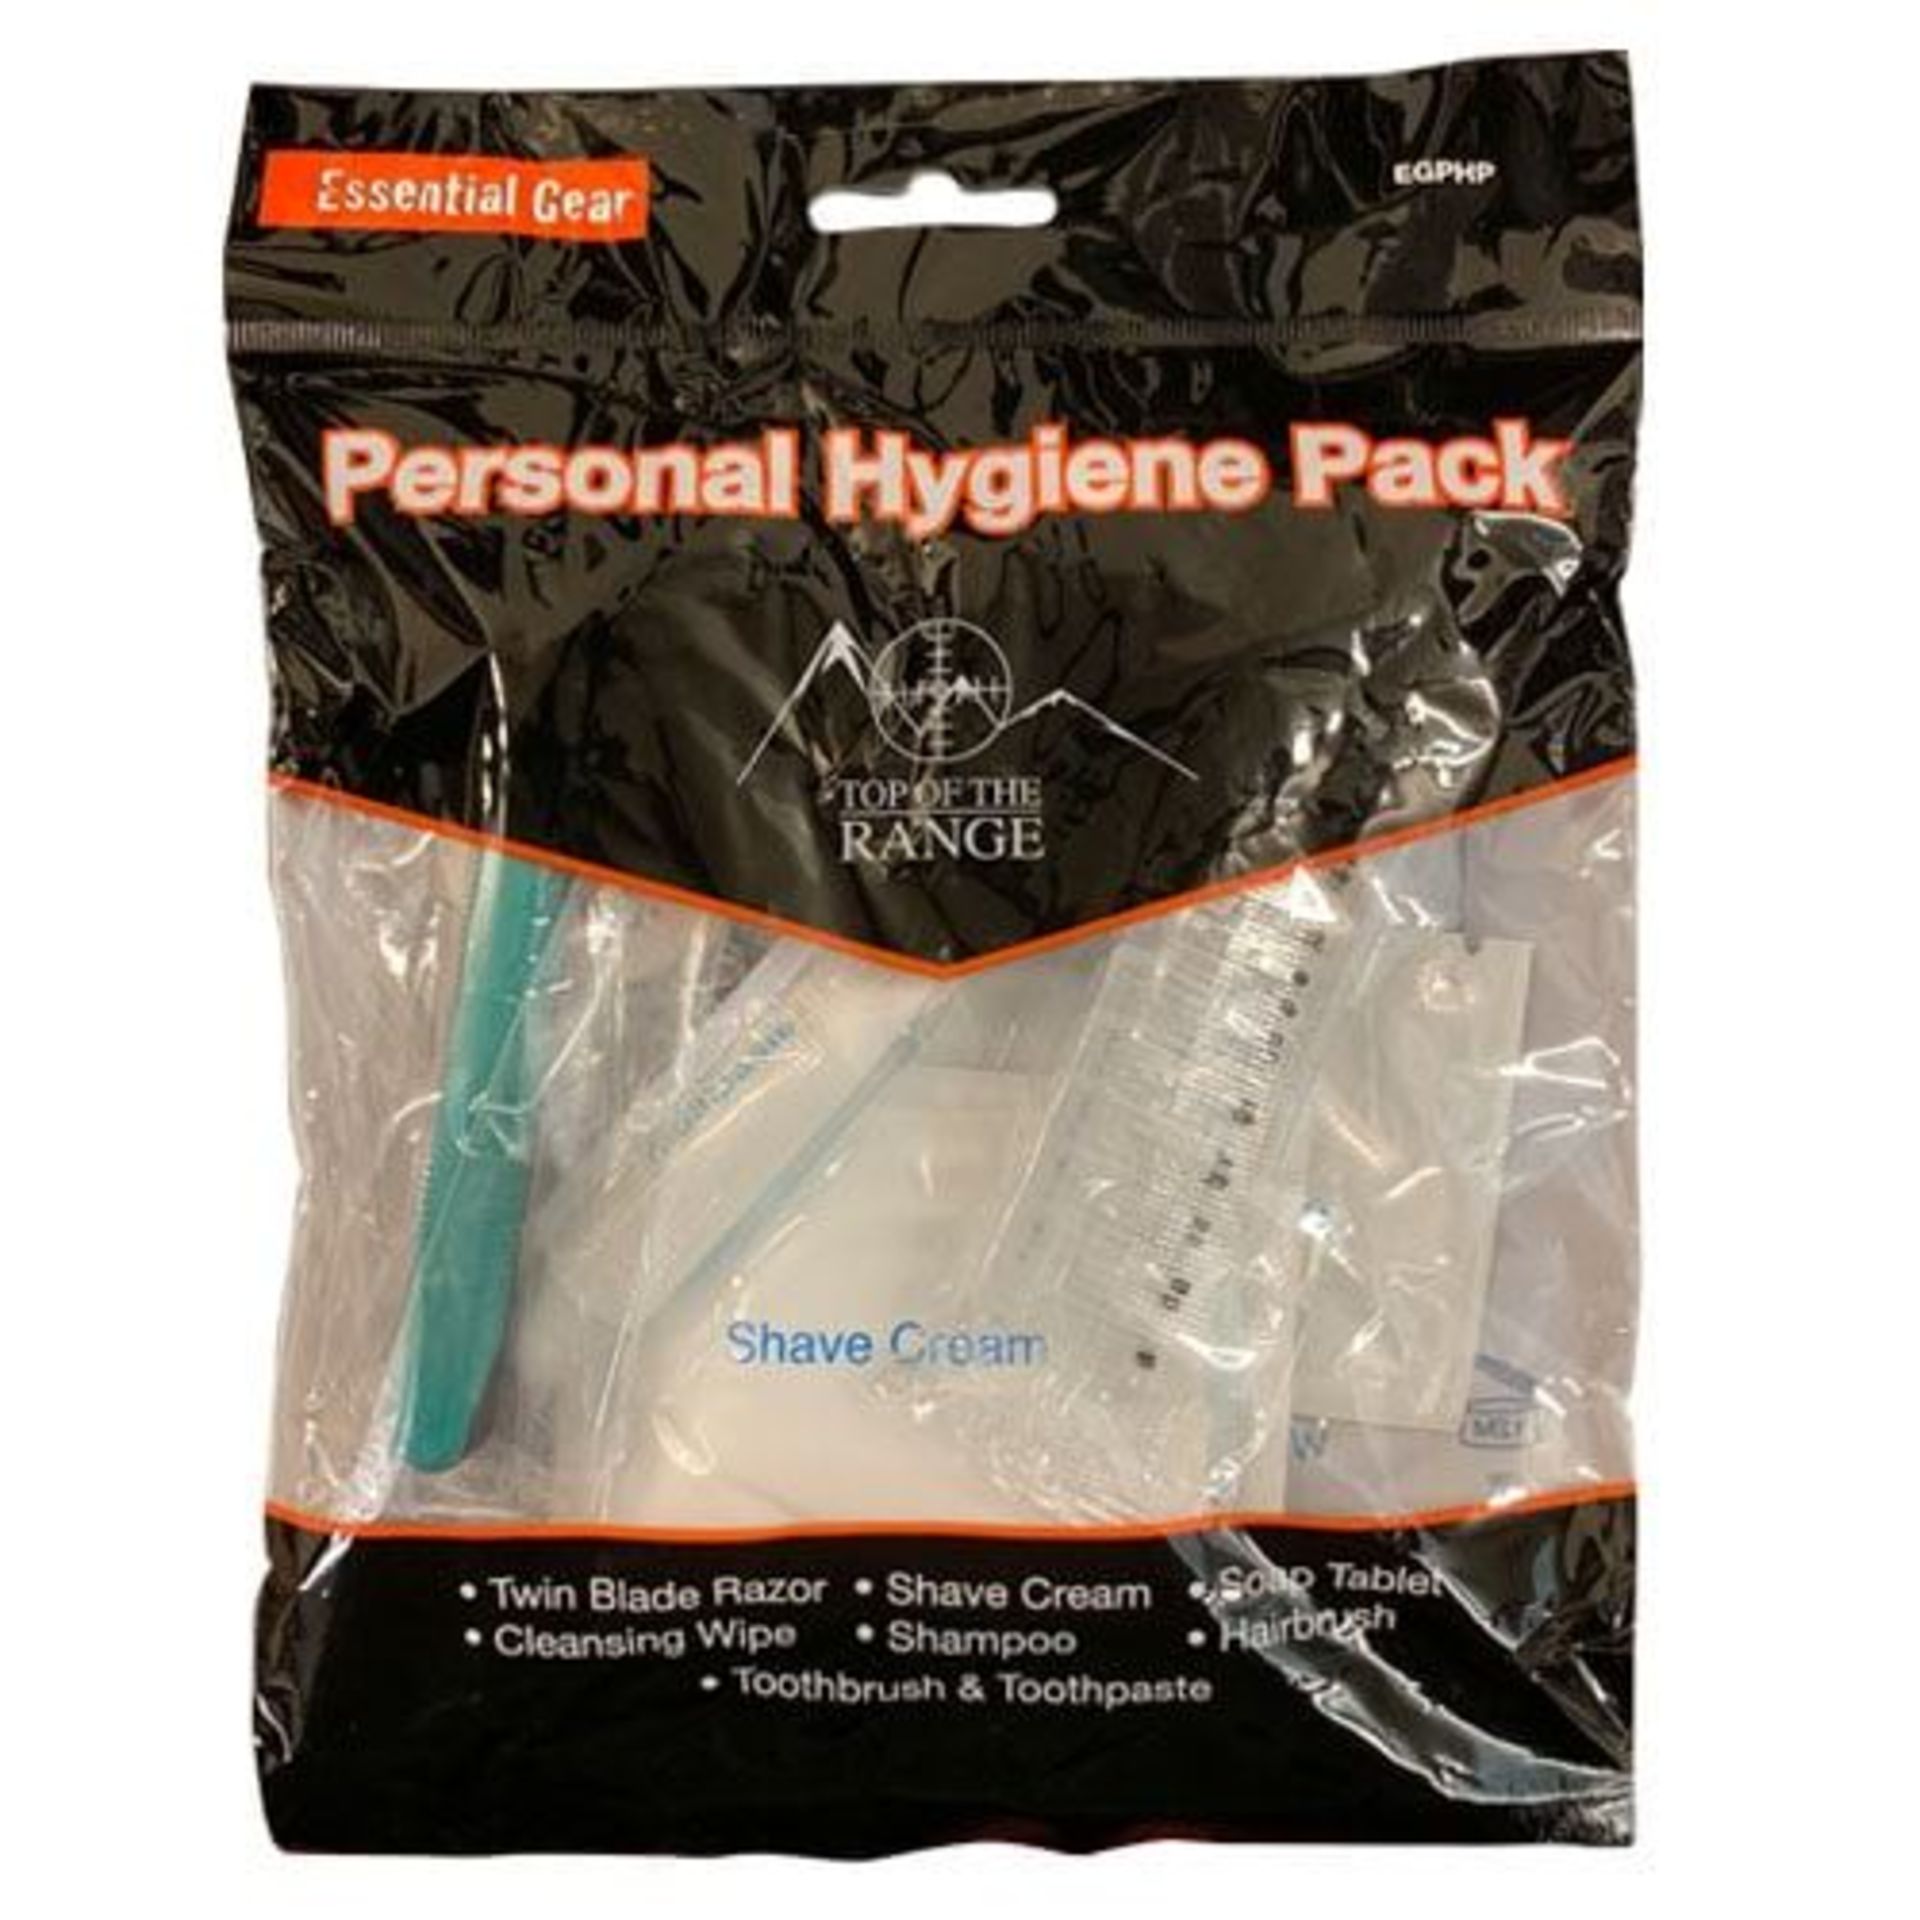 150 Essential Gear Personal Hygiene packs RRP 3.